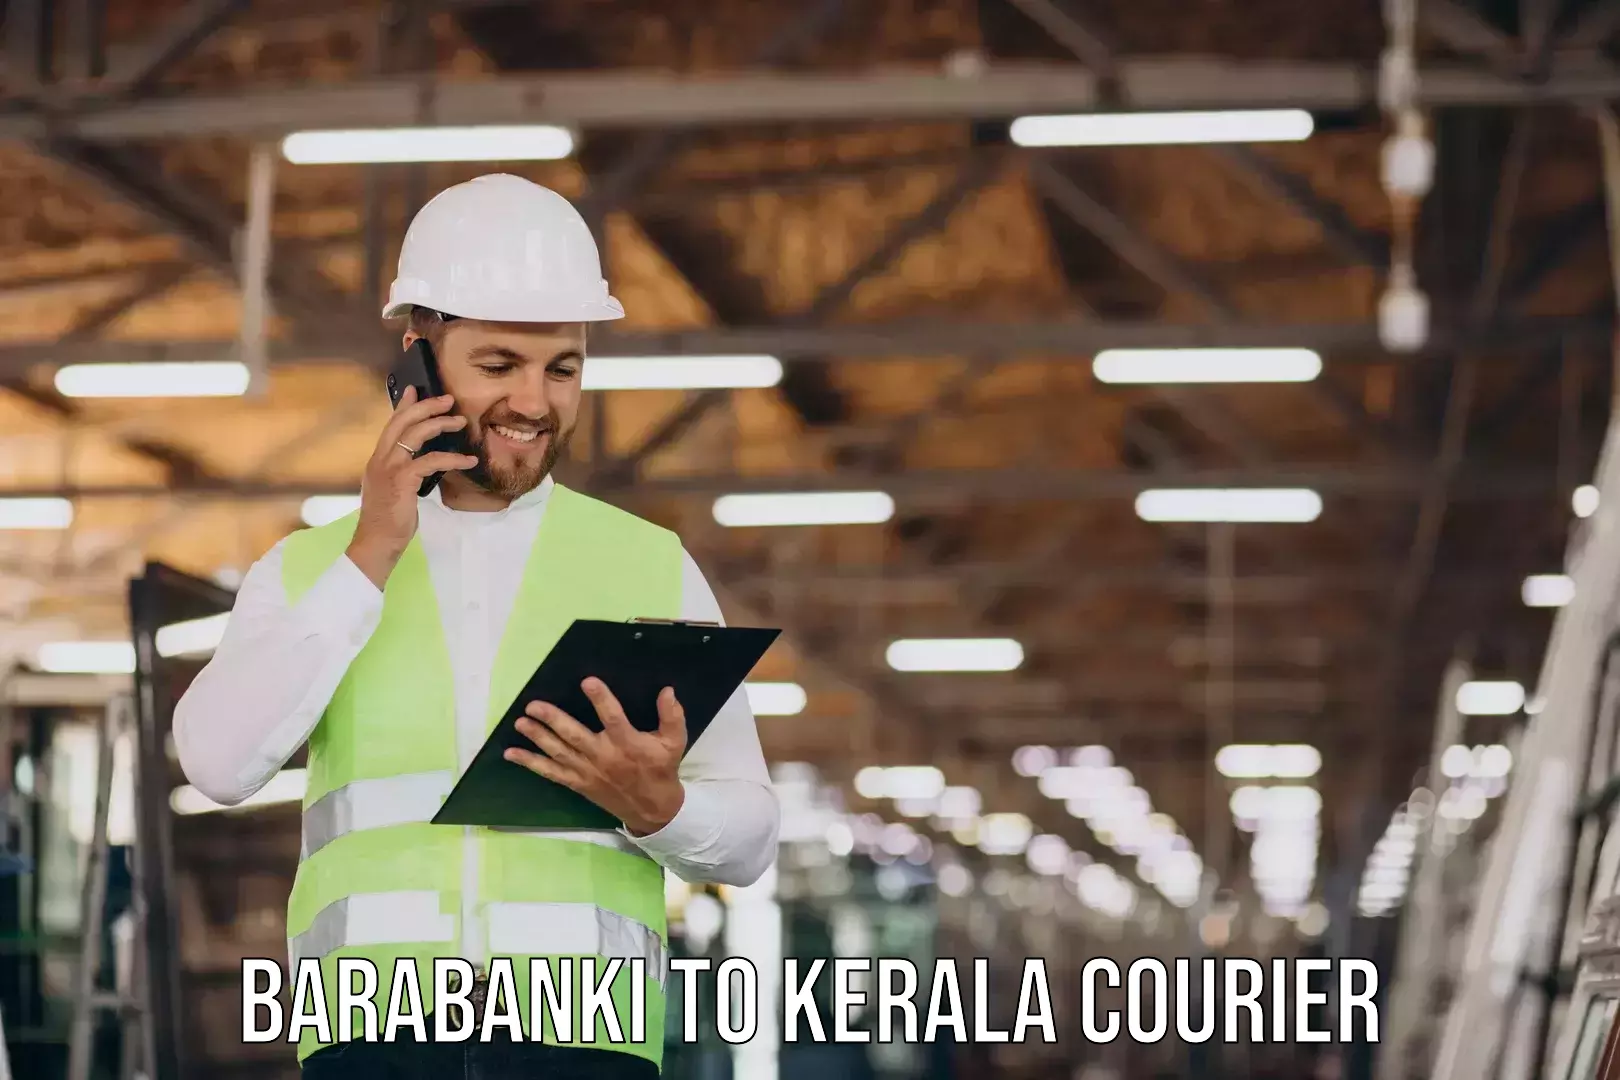 Professional movers Barabanki to Thiruvananthapuram